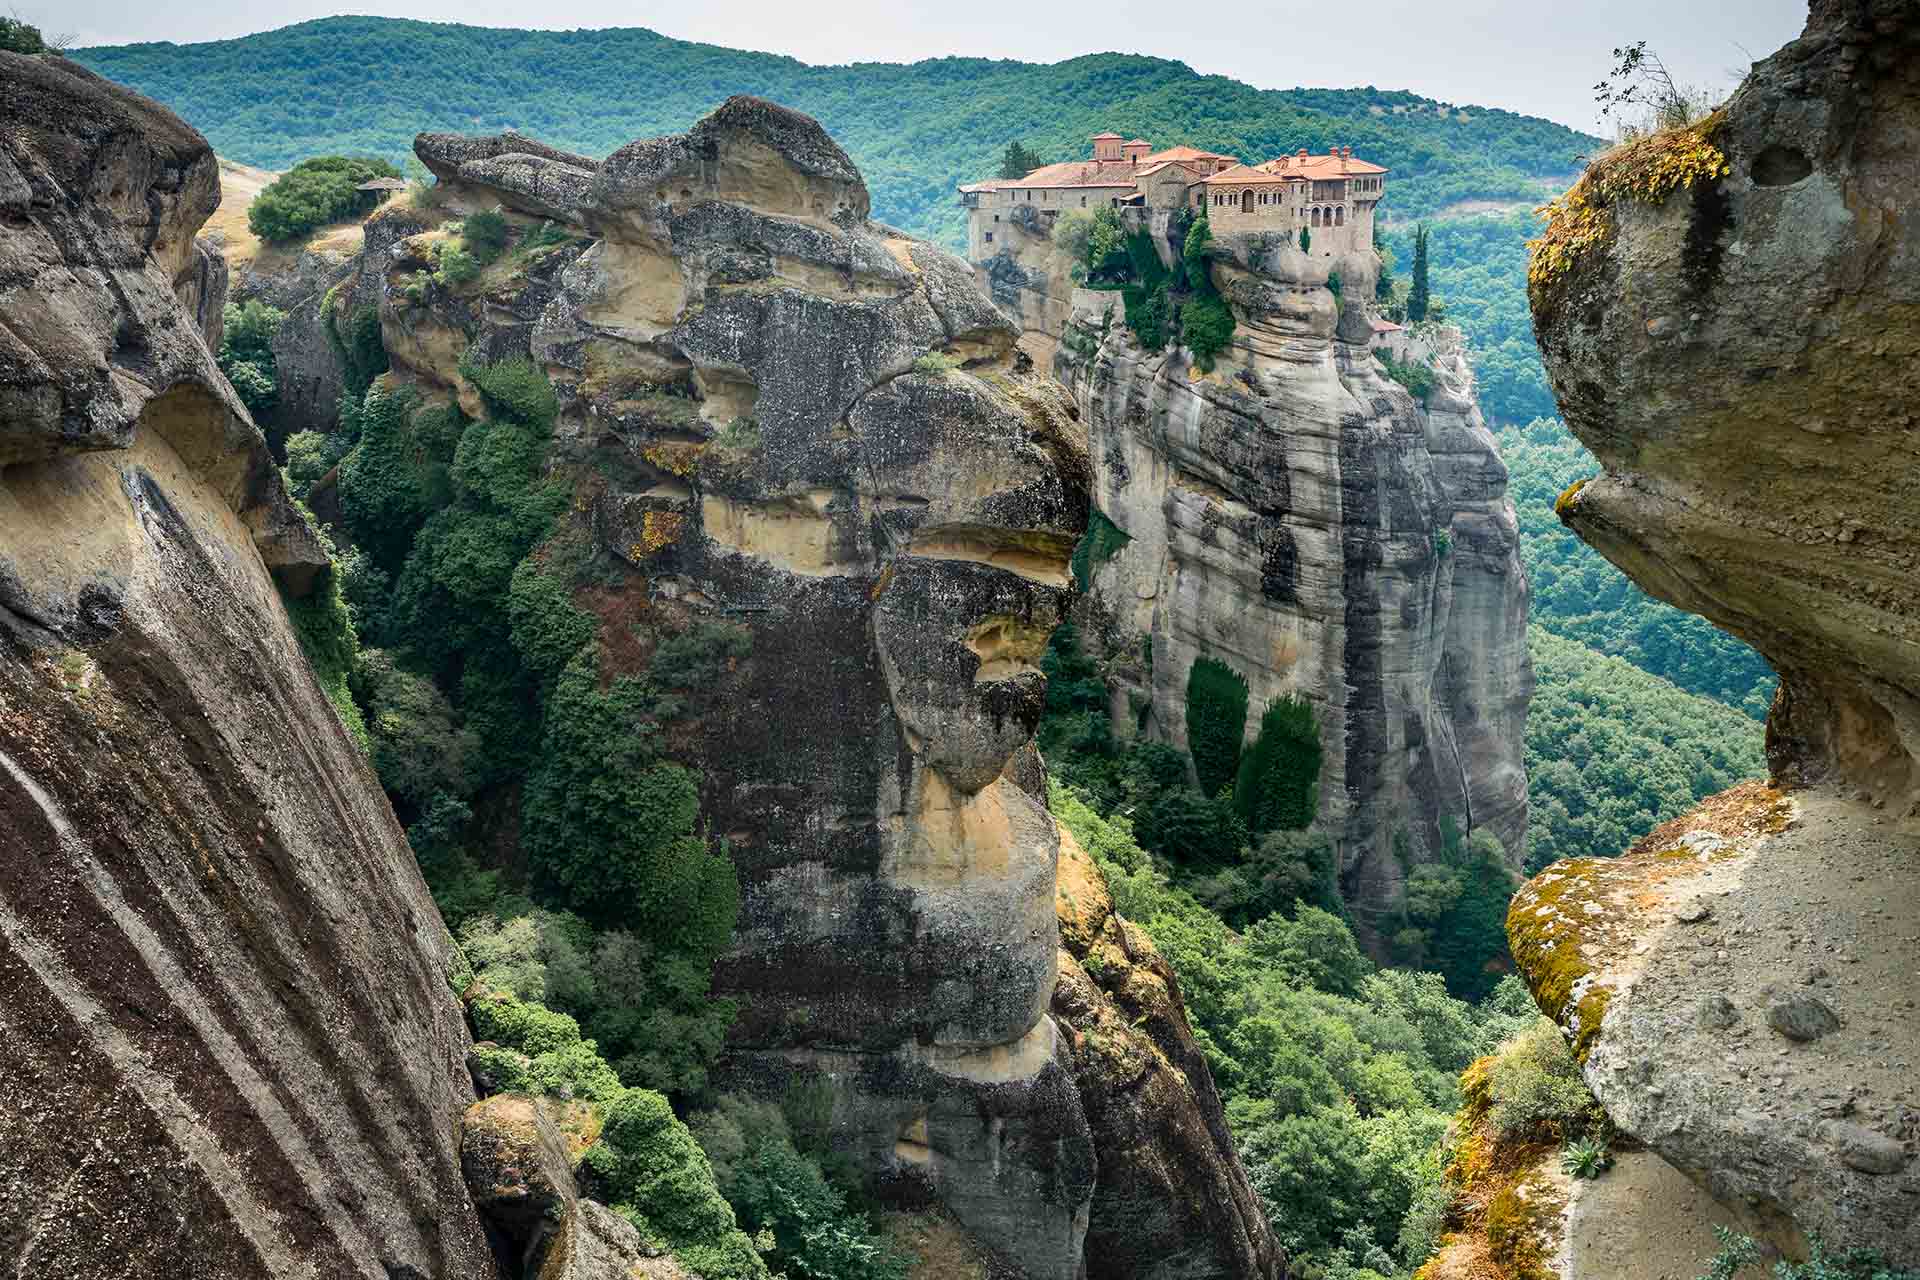 kloosters op een bergtop omringd door hoge rotsen